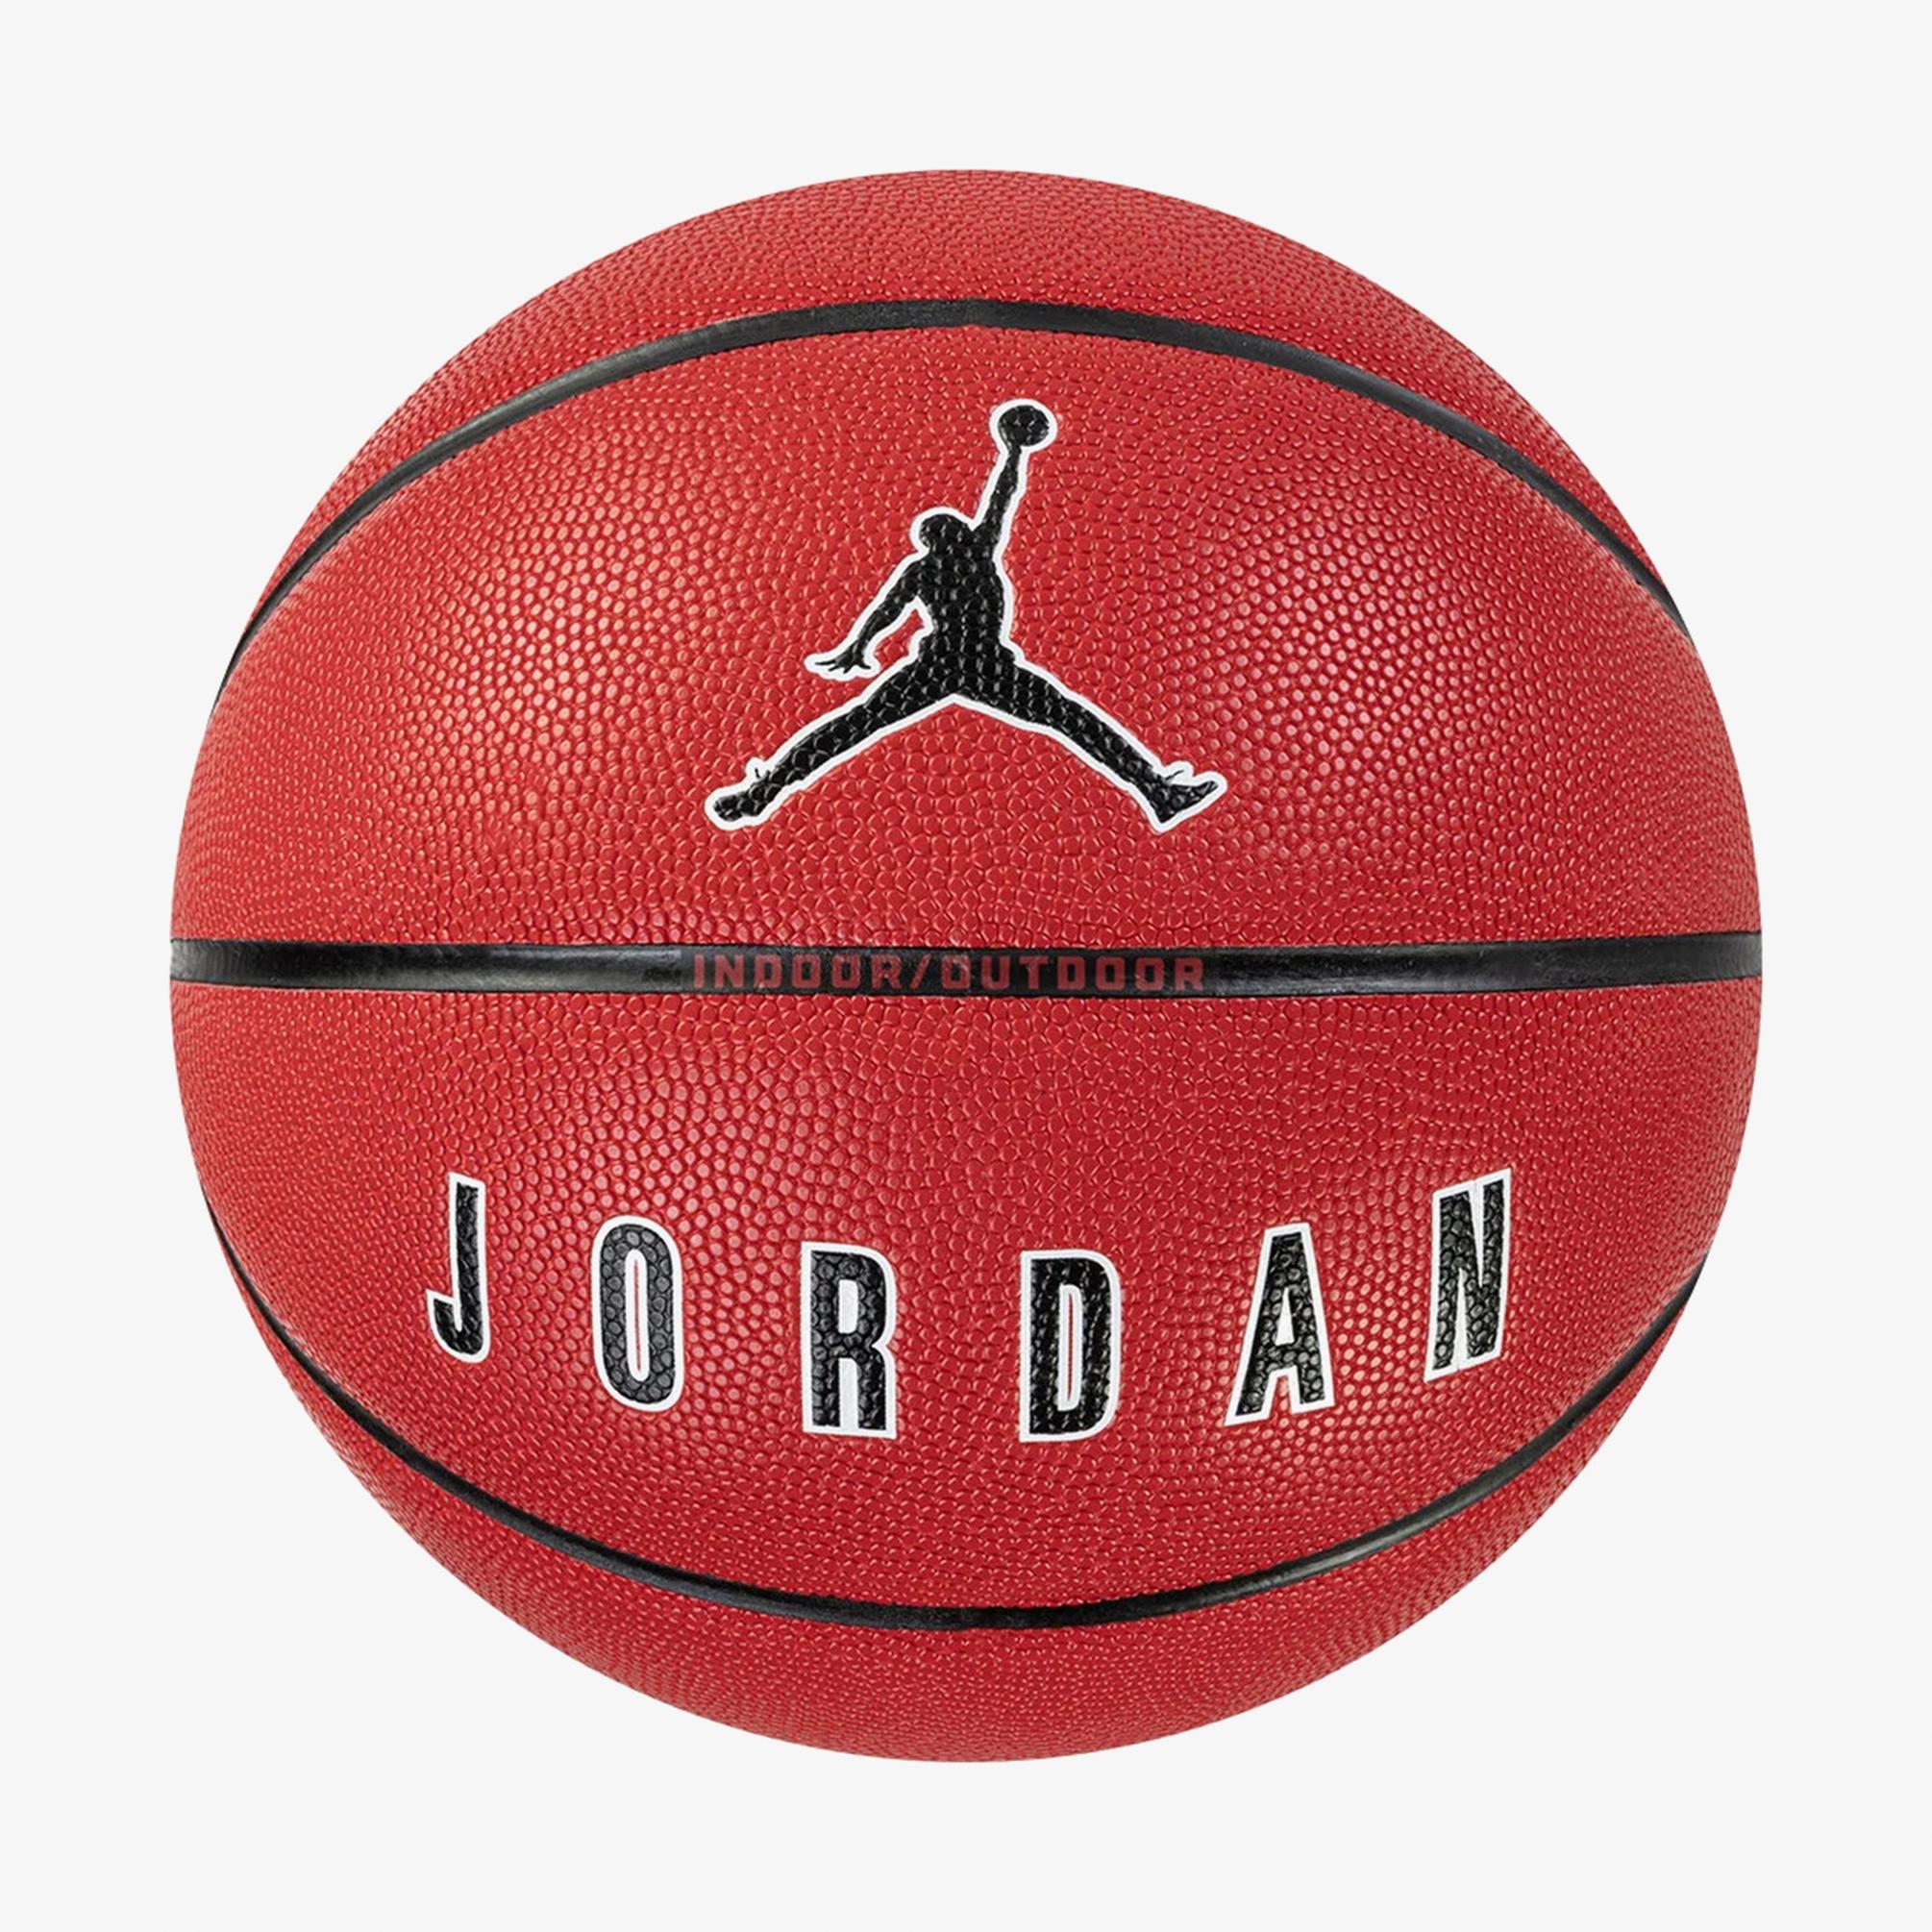  Jordan Ultimate 2.0 7 Numara Turuncu Basketbol Topu